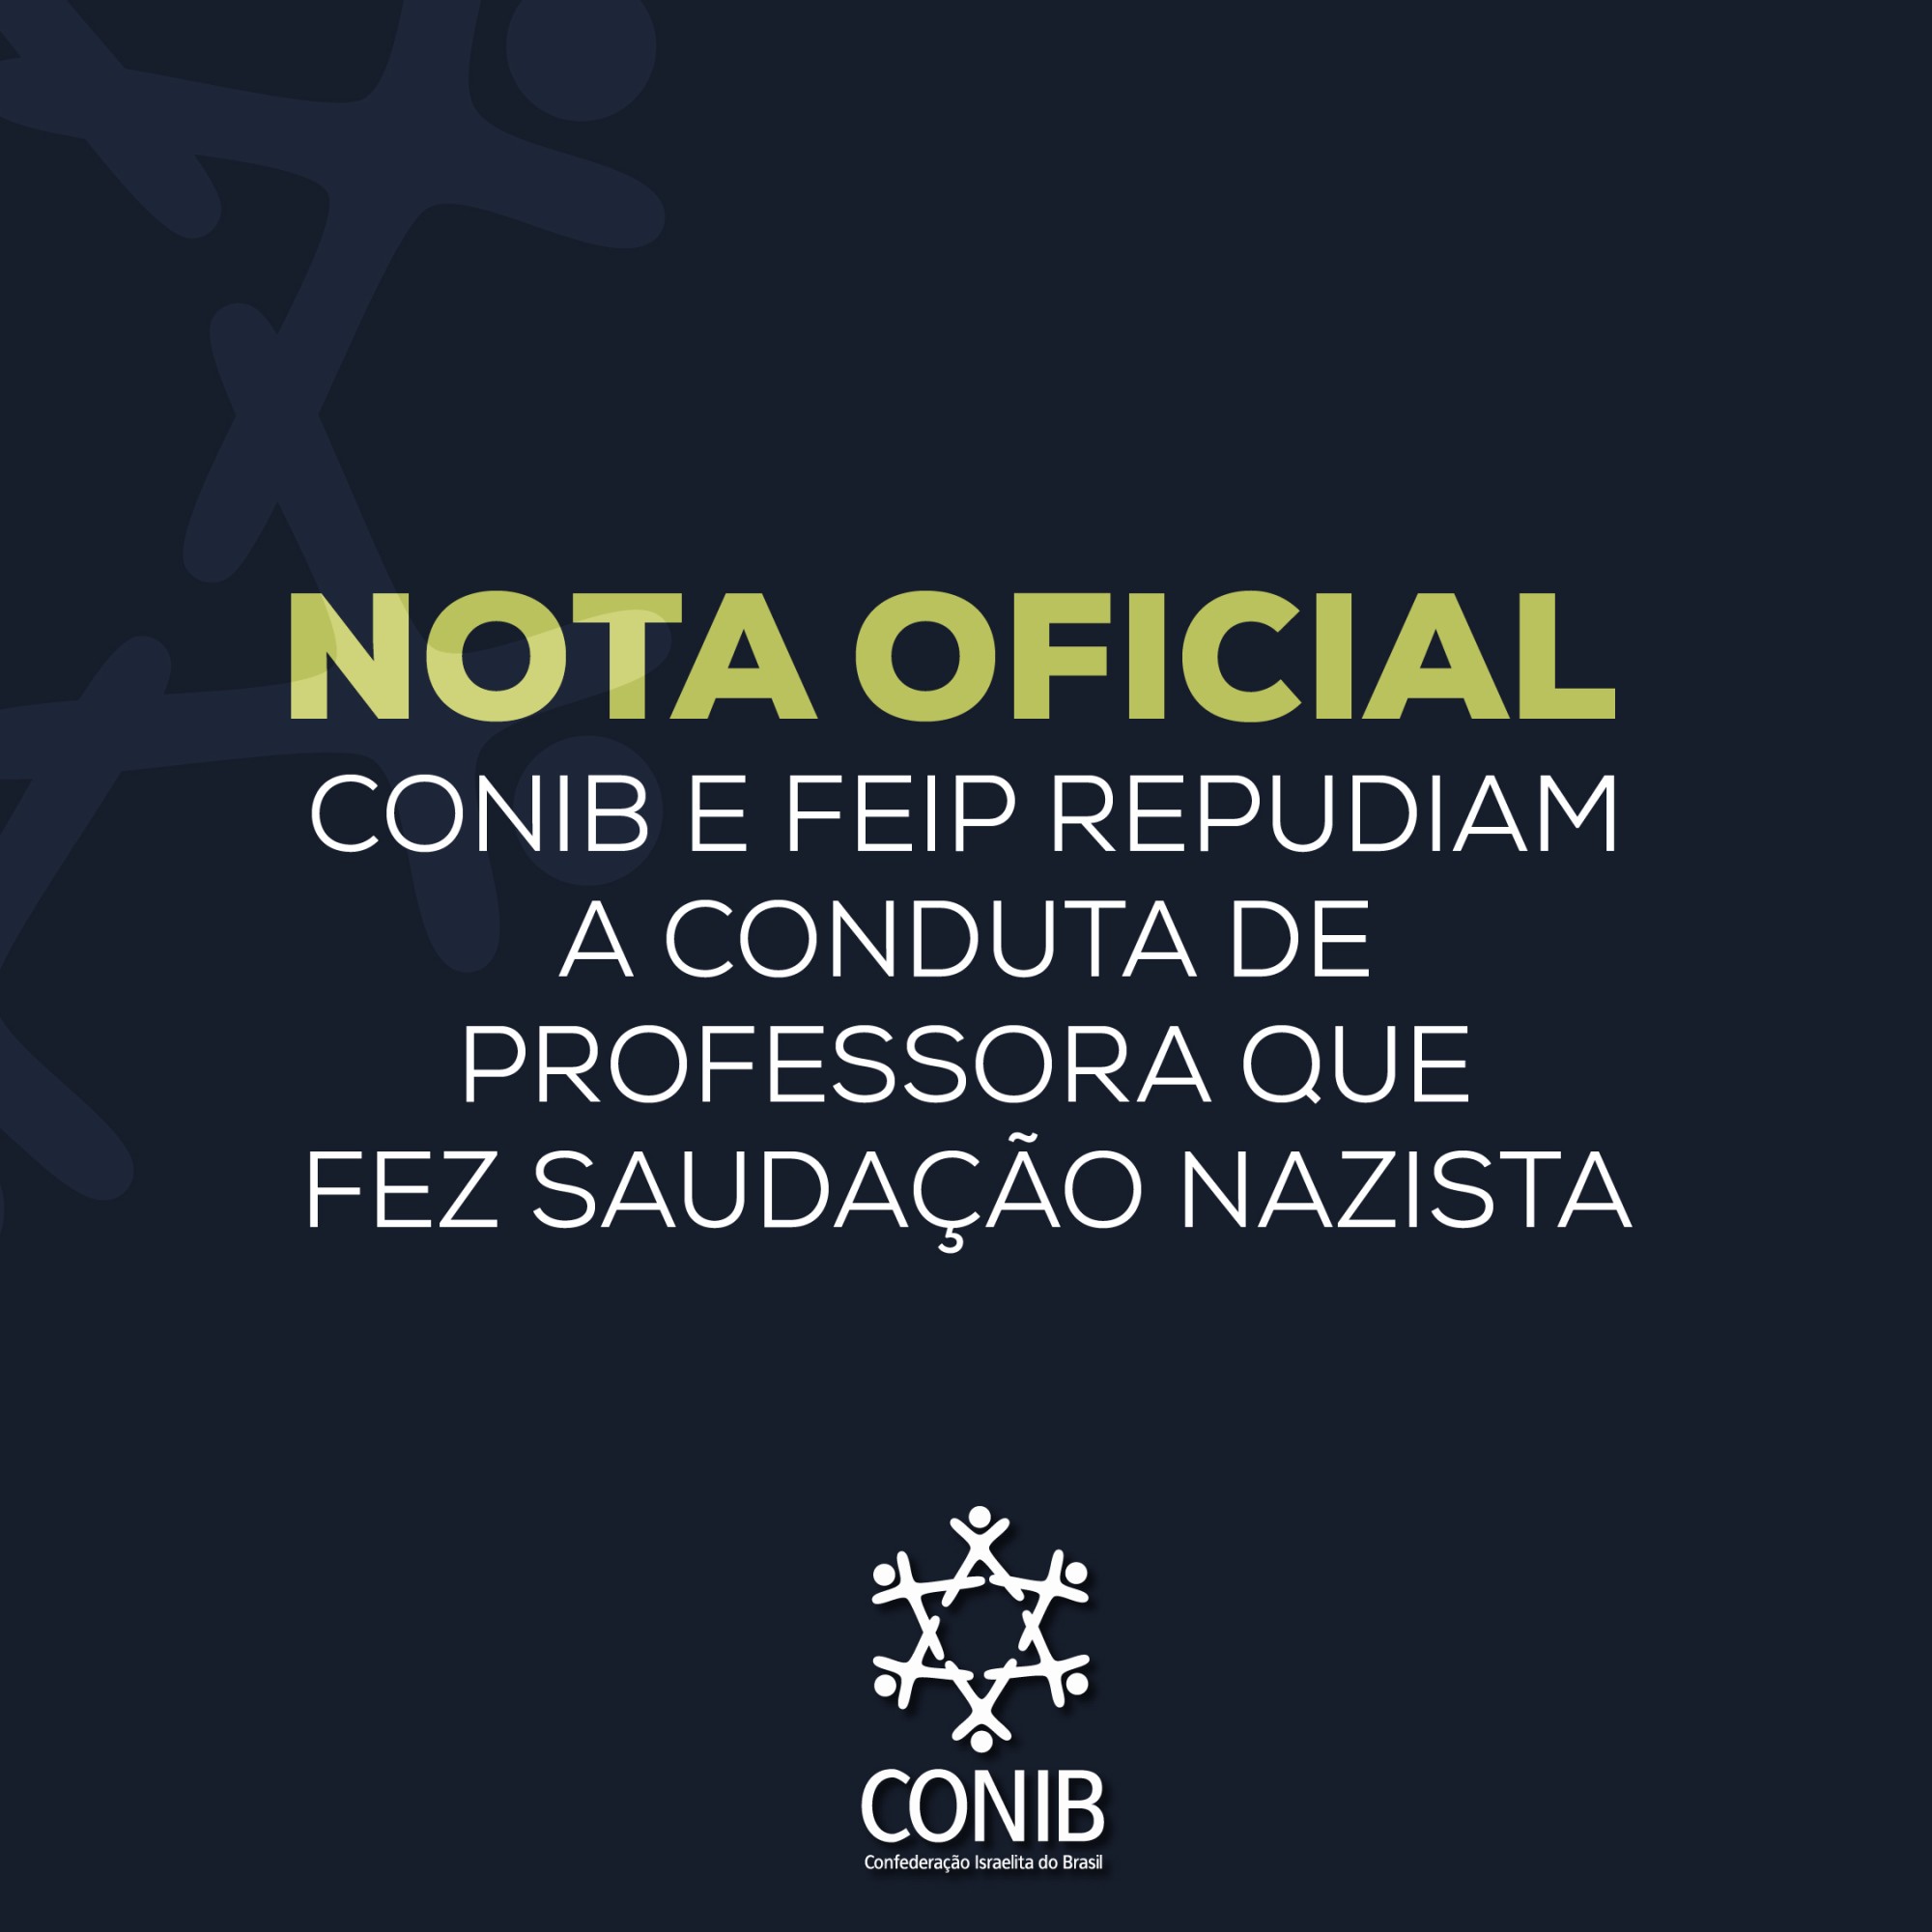 CONIB e FEiP repudiam a conduta de professora que fez saudação nazista - Fundada em 1948, a CONIB – Confederação Israelita do Brasil é o órgão de representação e coordenação política da comunidade judaica brasileira. 